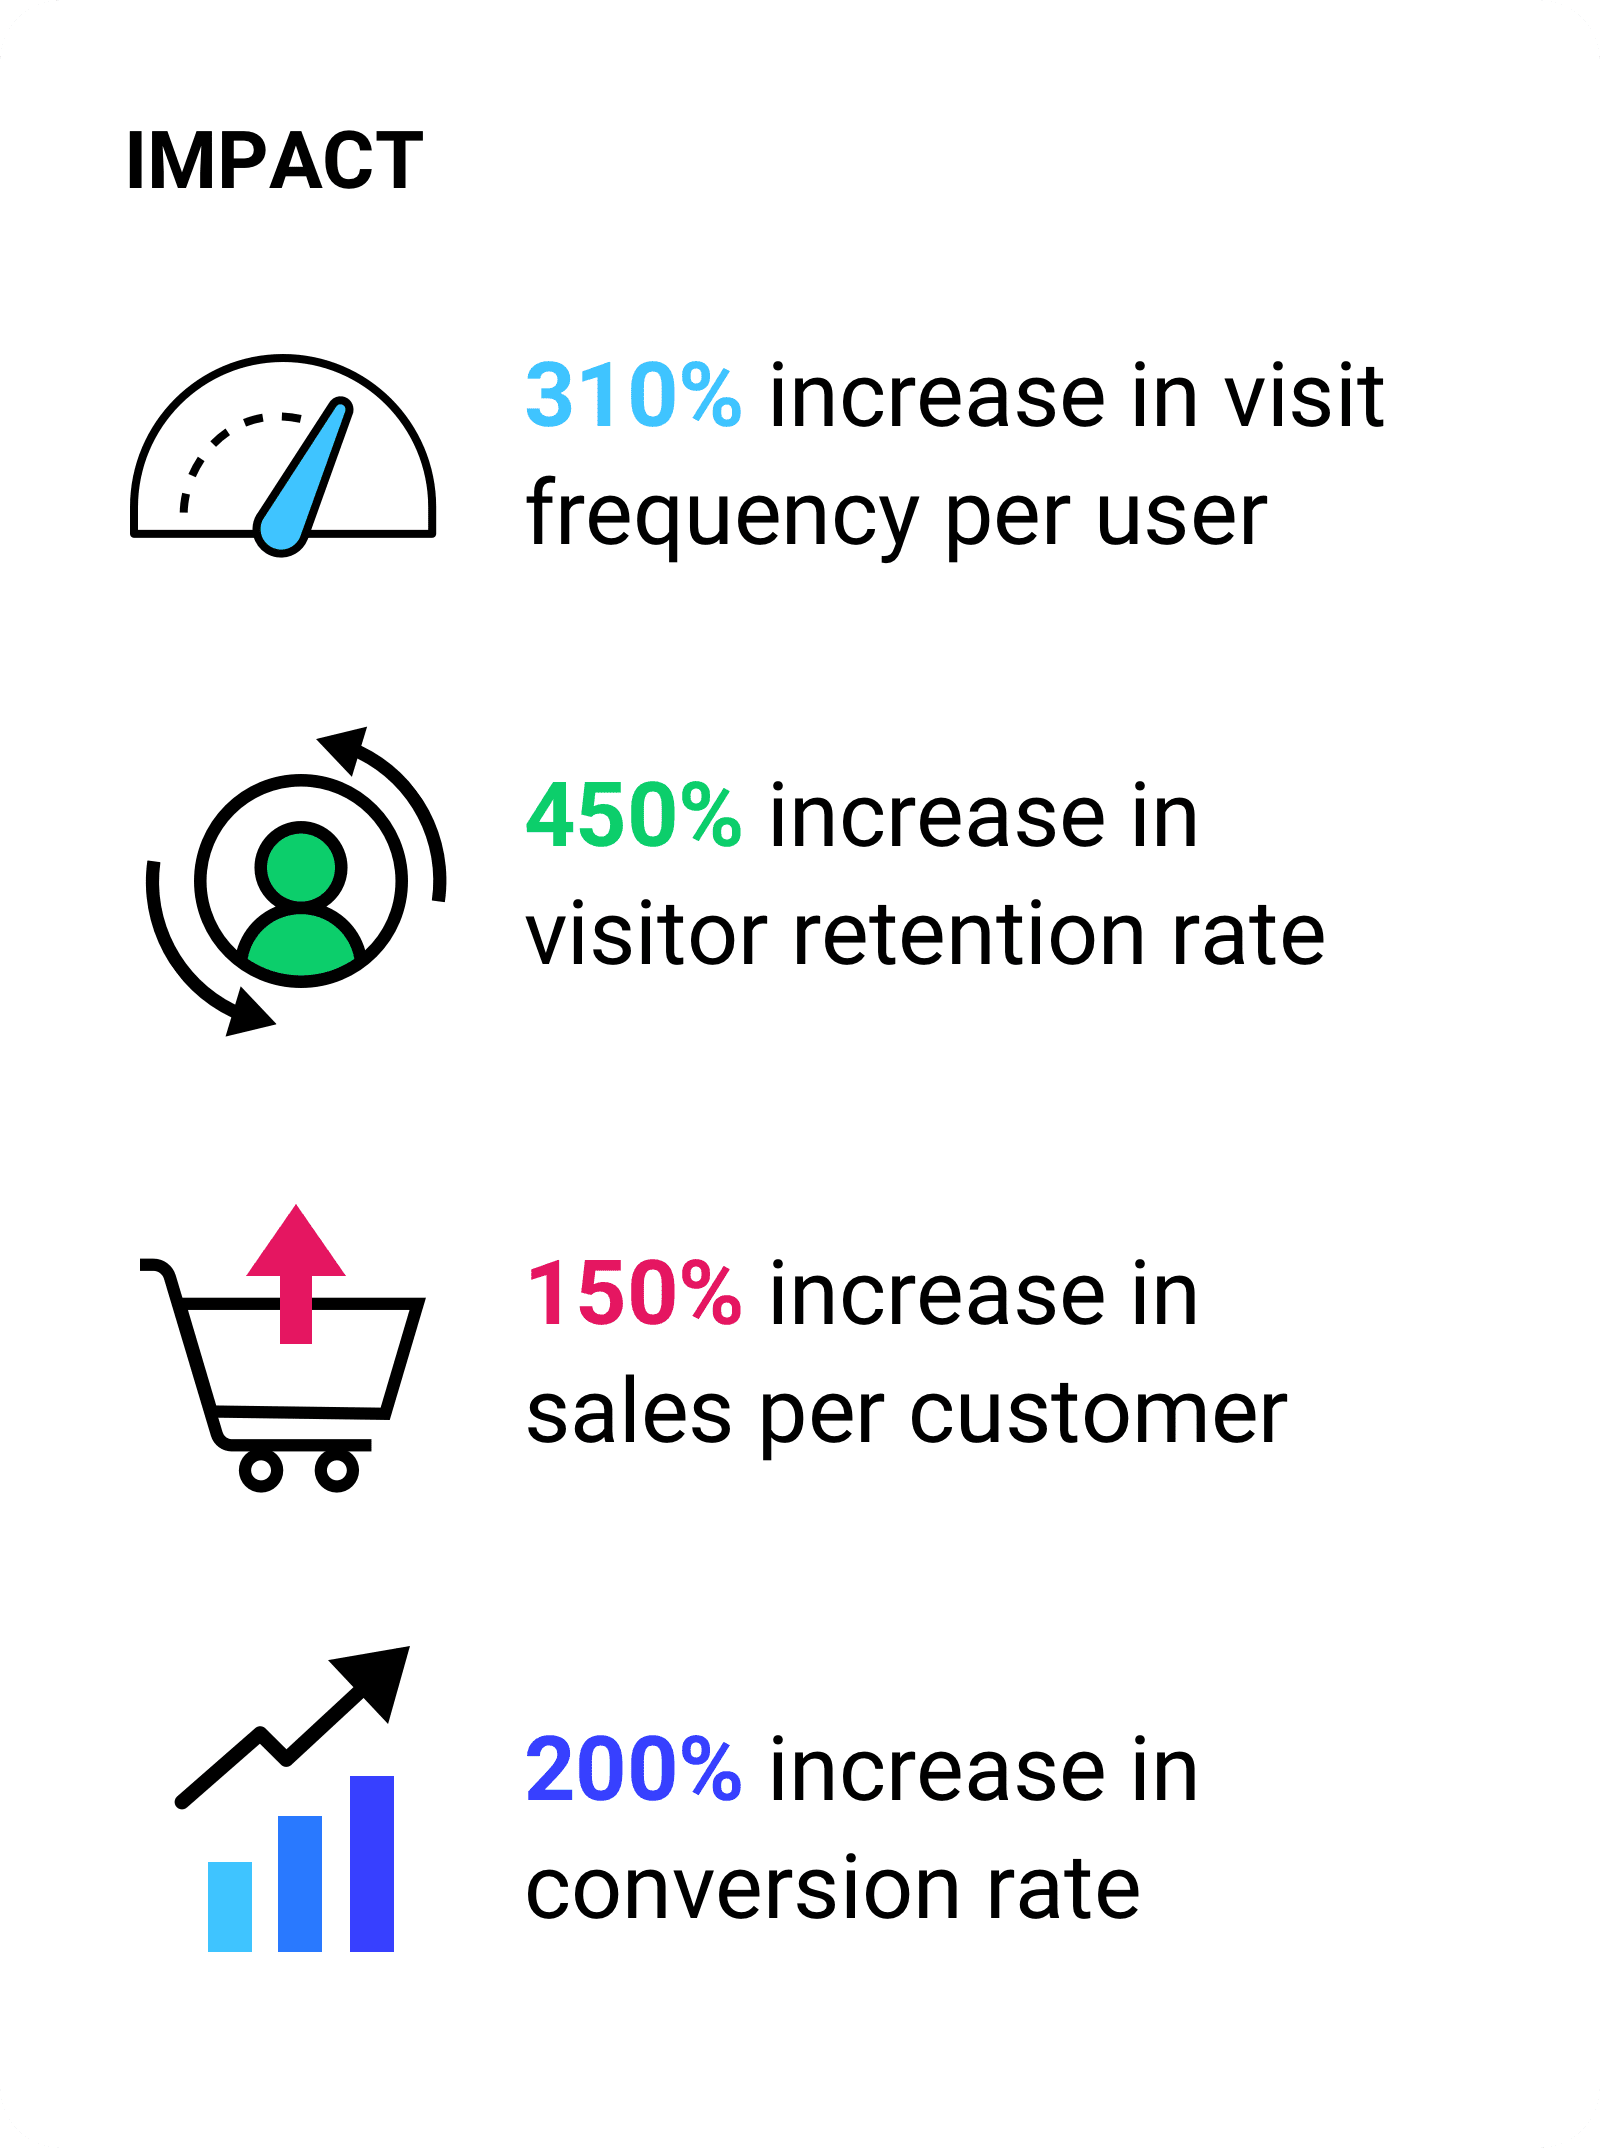 زيادة بنسبة 310% في عدد مرات الزيارة لكل مستخدم.  زيادة بنسبة 450% في معدل الاحتفاظ بالزائرين. زيادة في المبيعات بنسبة 150% لكل عميل وزيادة في معدّل الإحالات الناجحة بنسبة 200%.